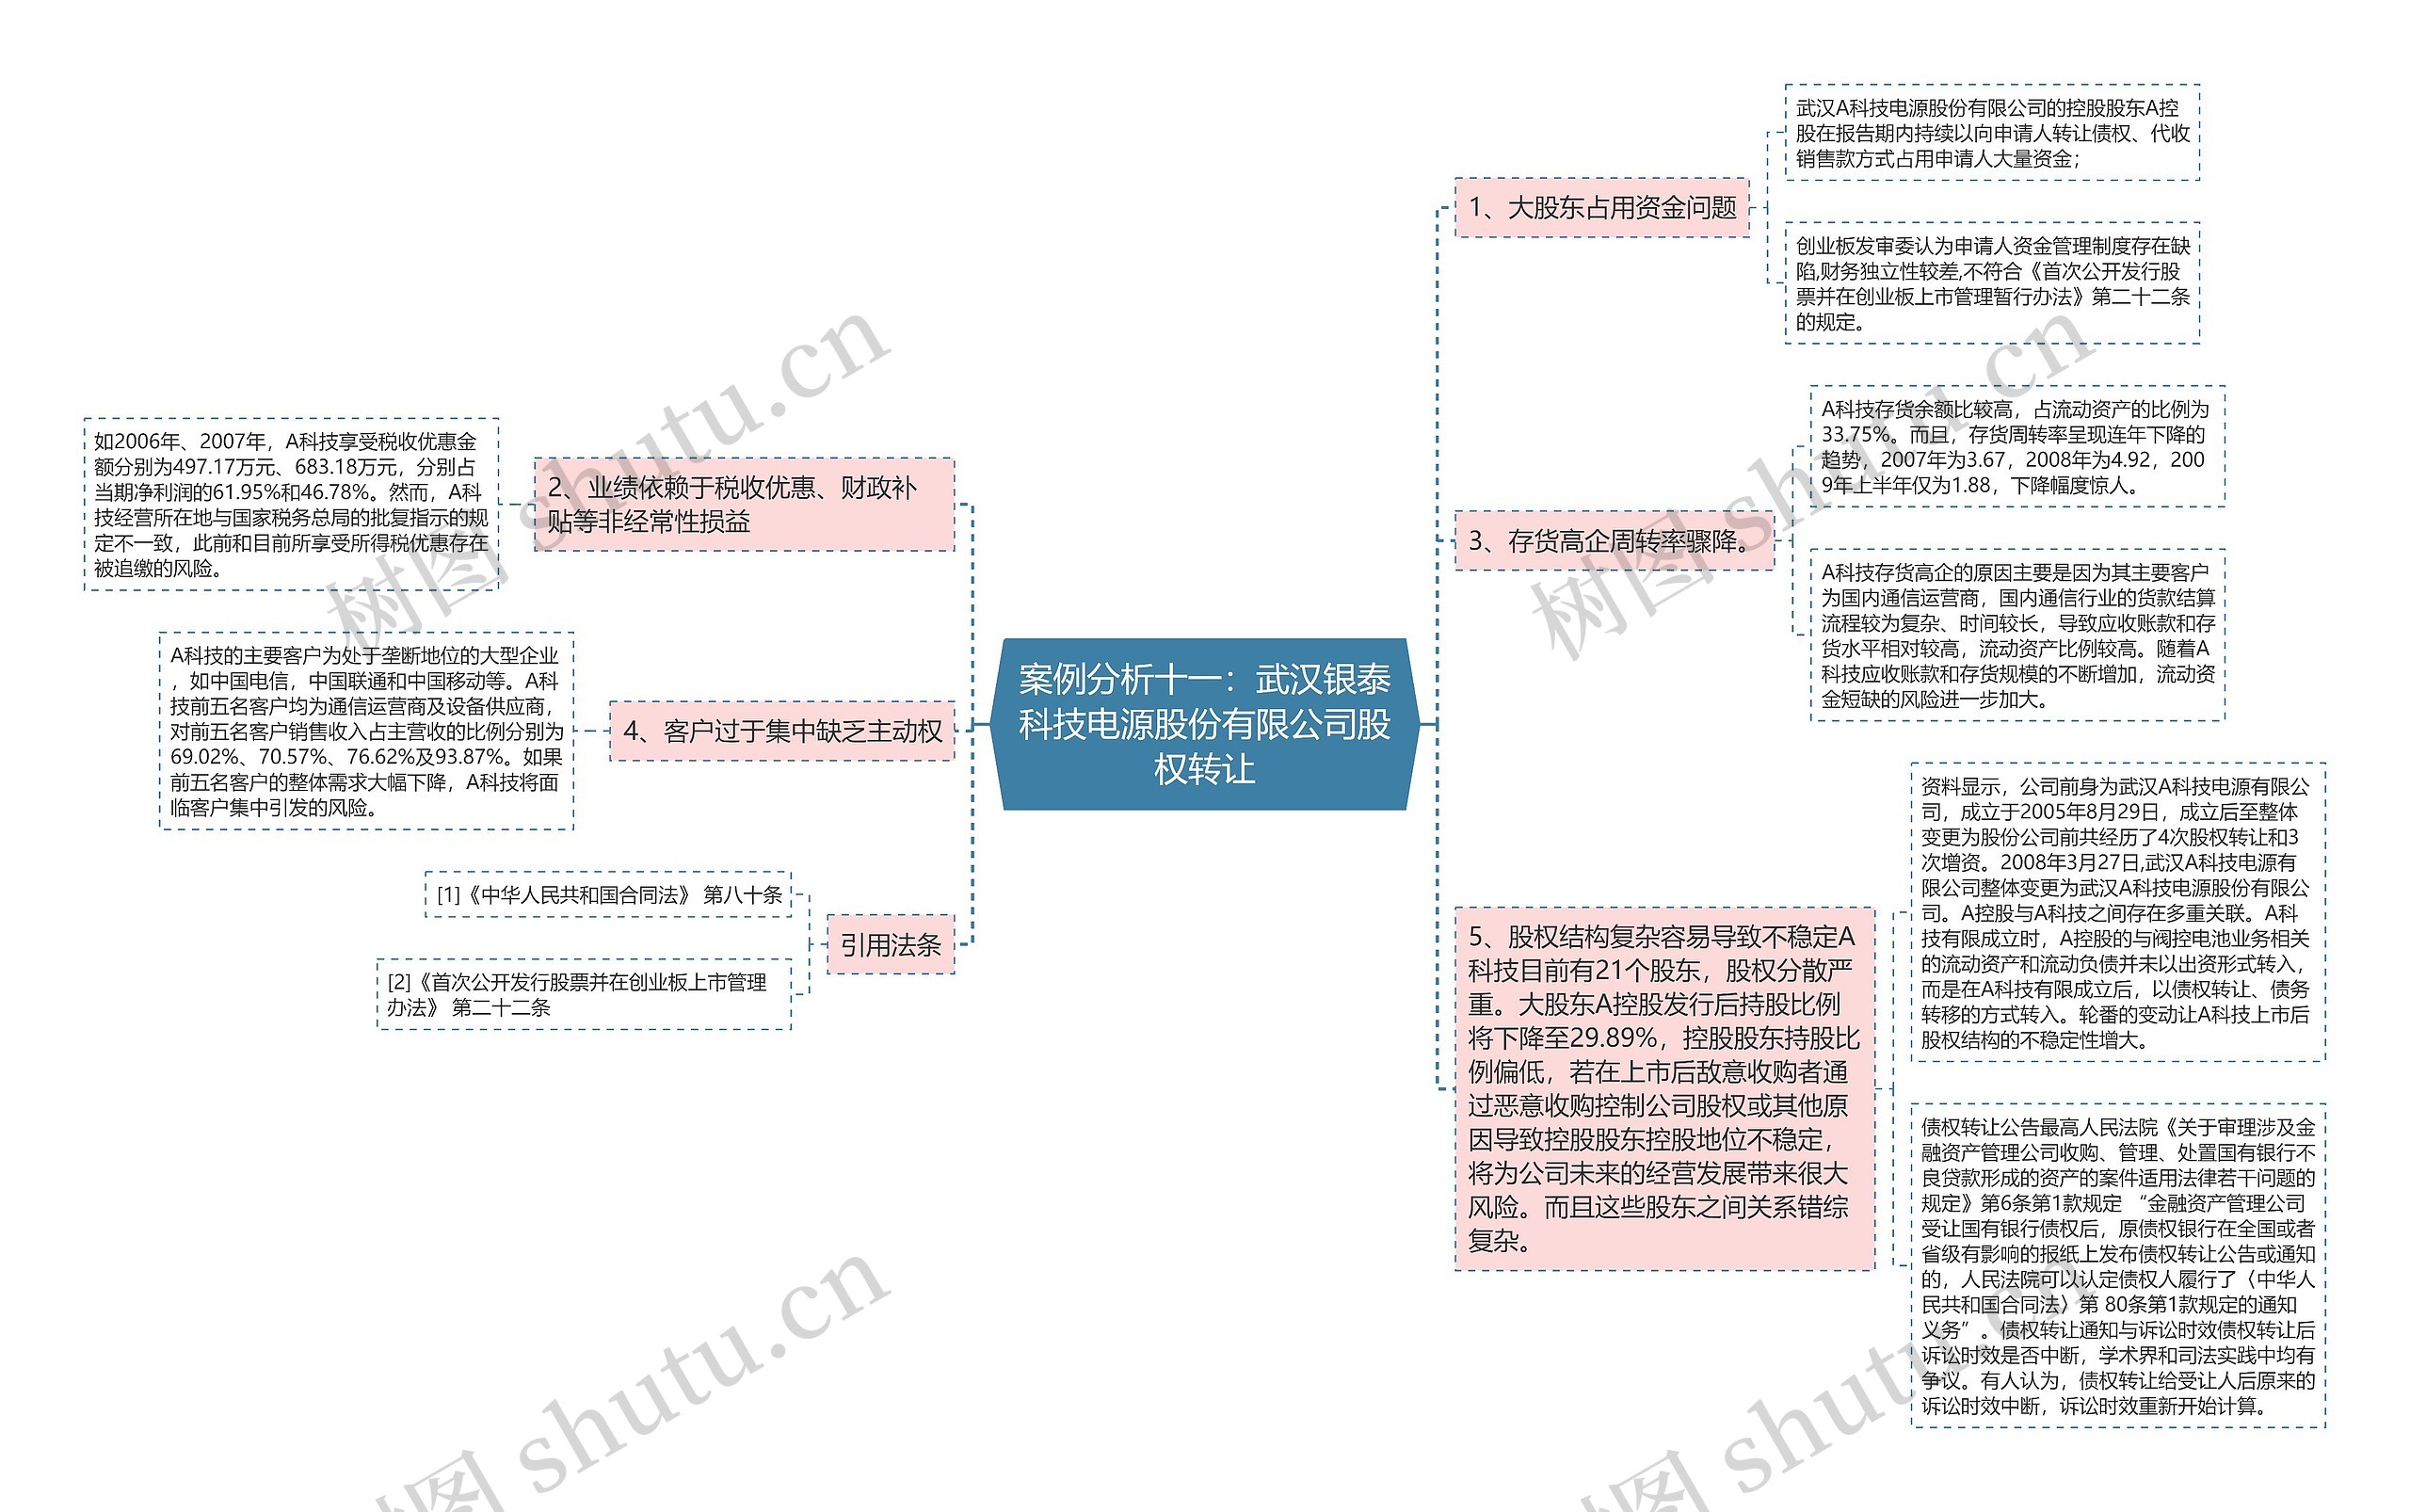 案例分析十一：武汉银泰科技电源股份有限公司股权转让思维导图